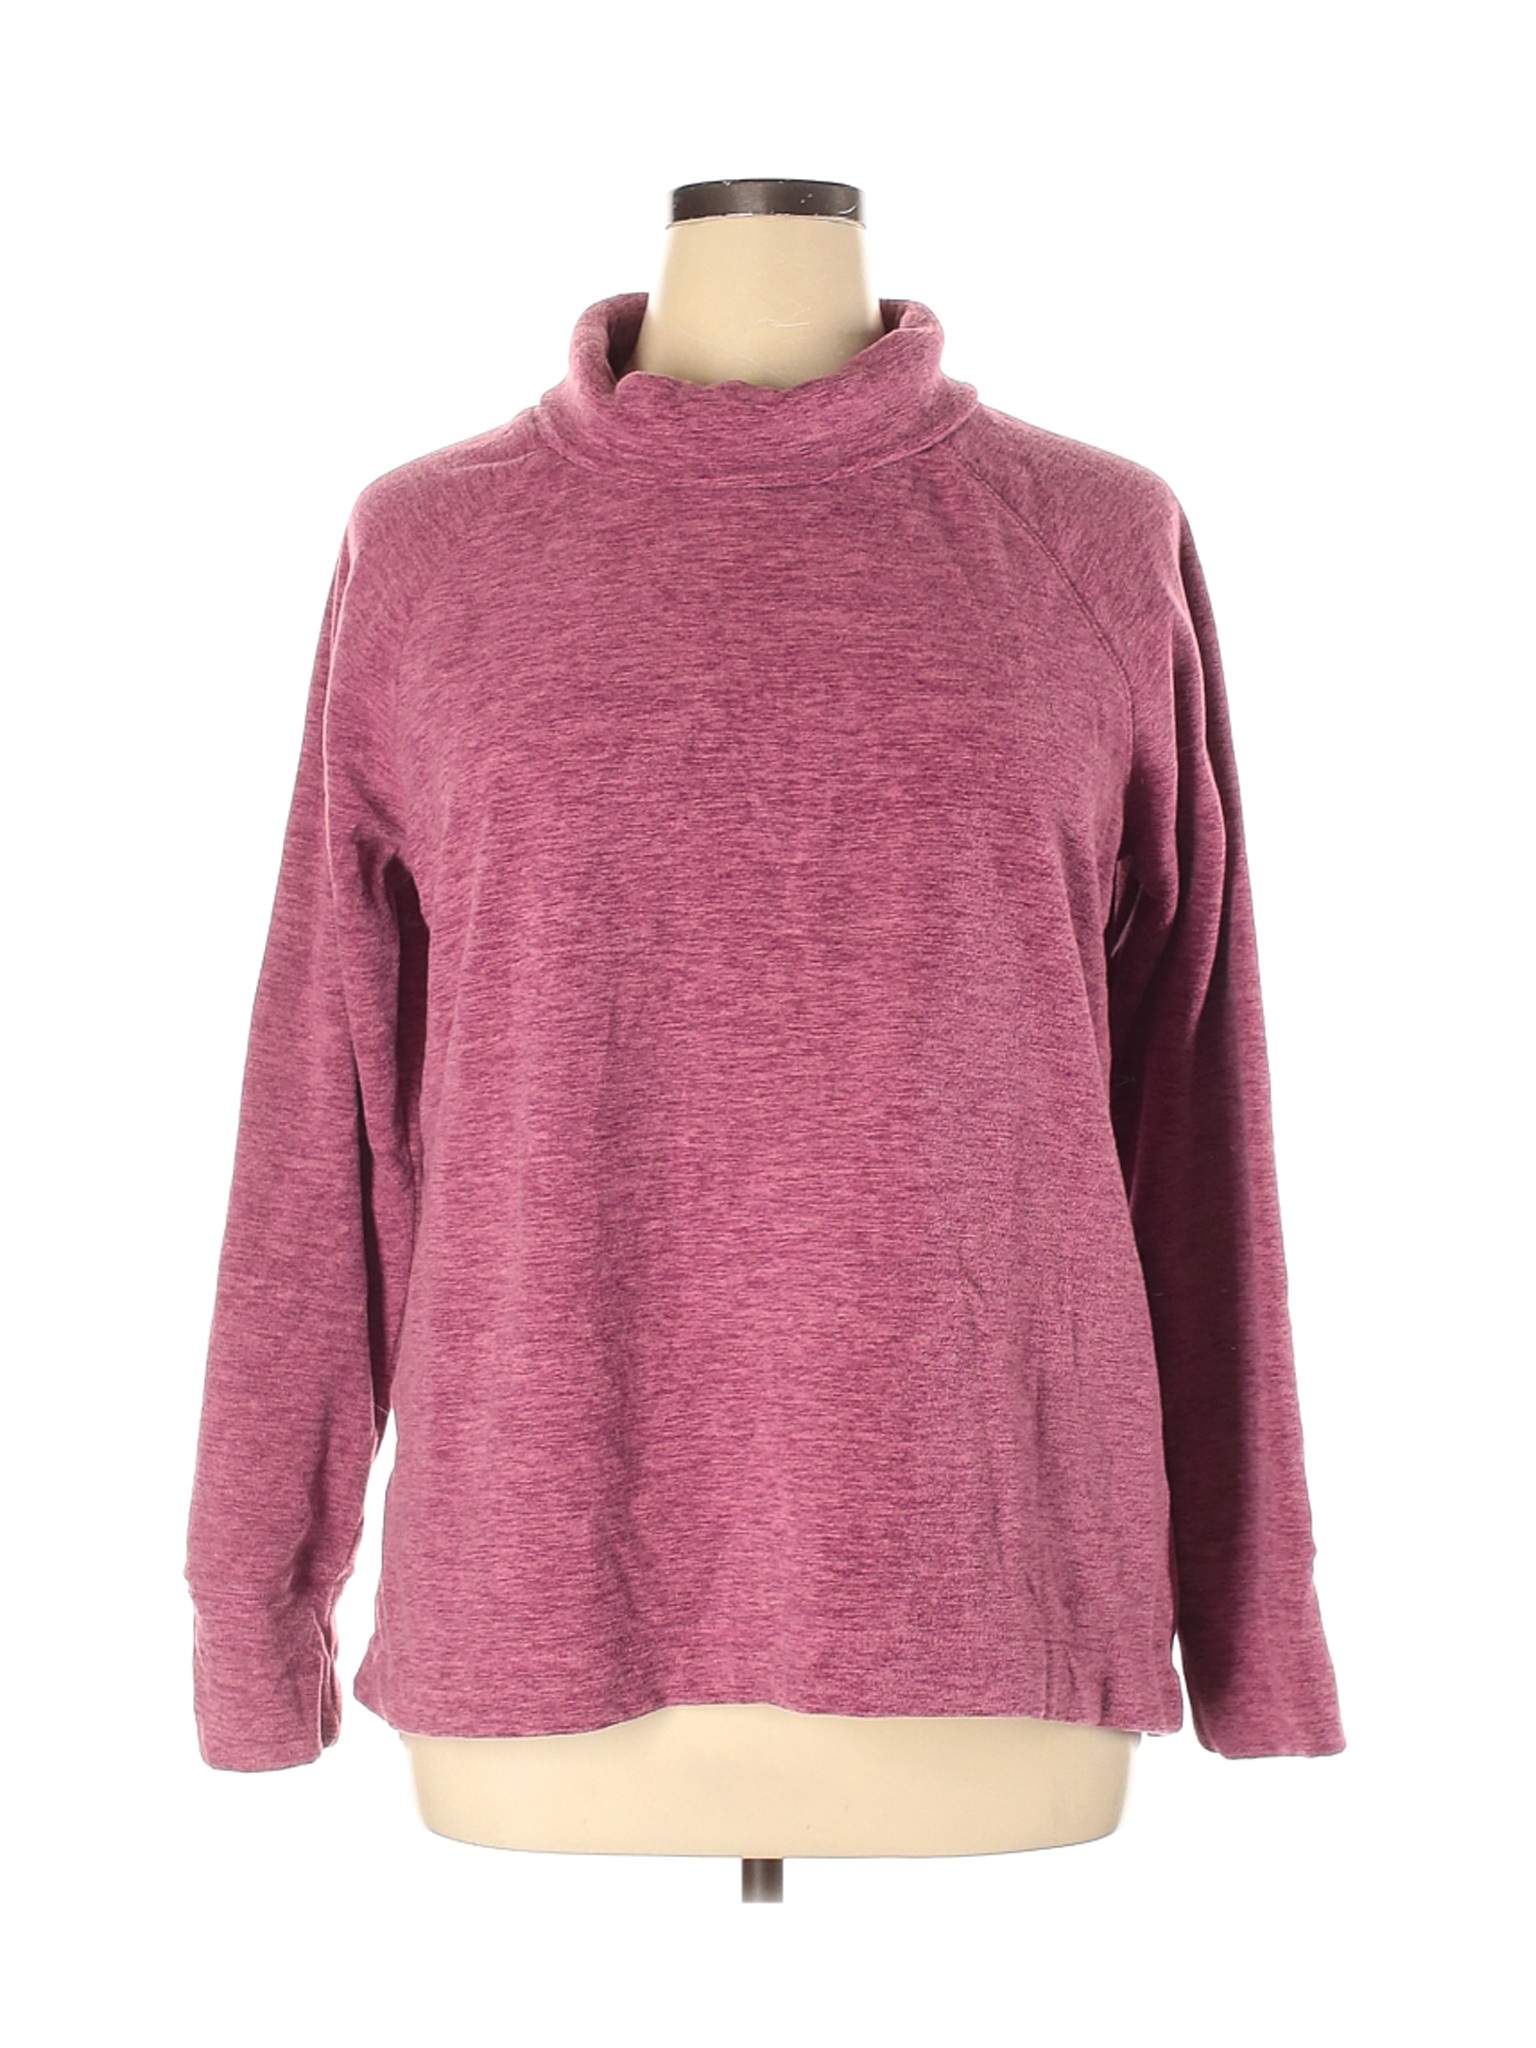 DSG Women Purple Sweatshirt XL | eBay